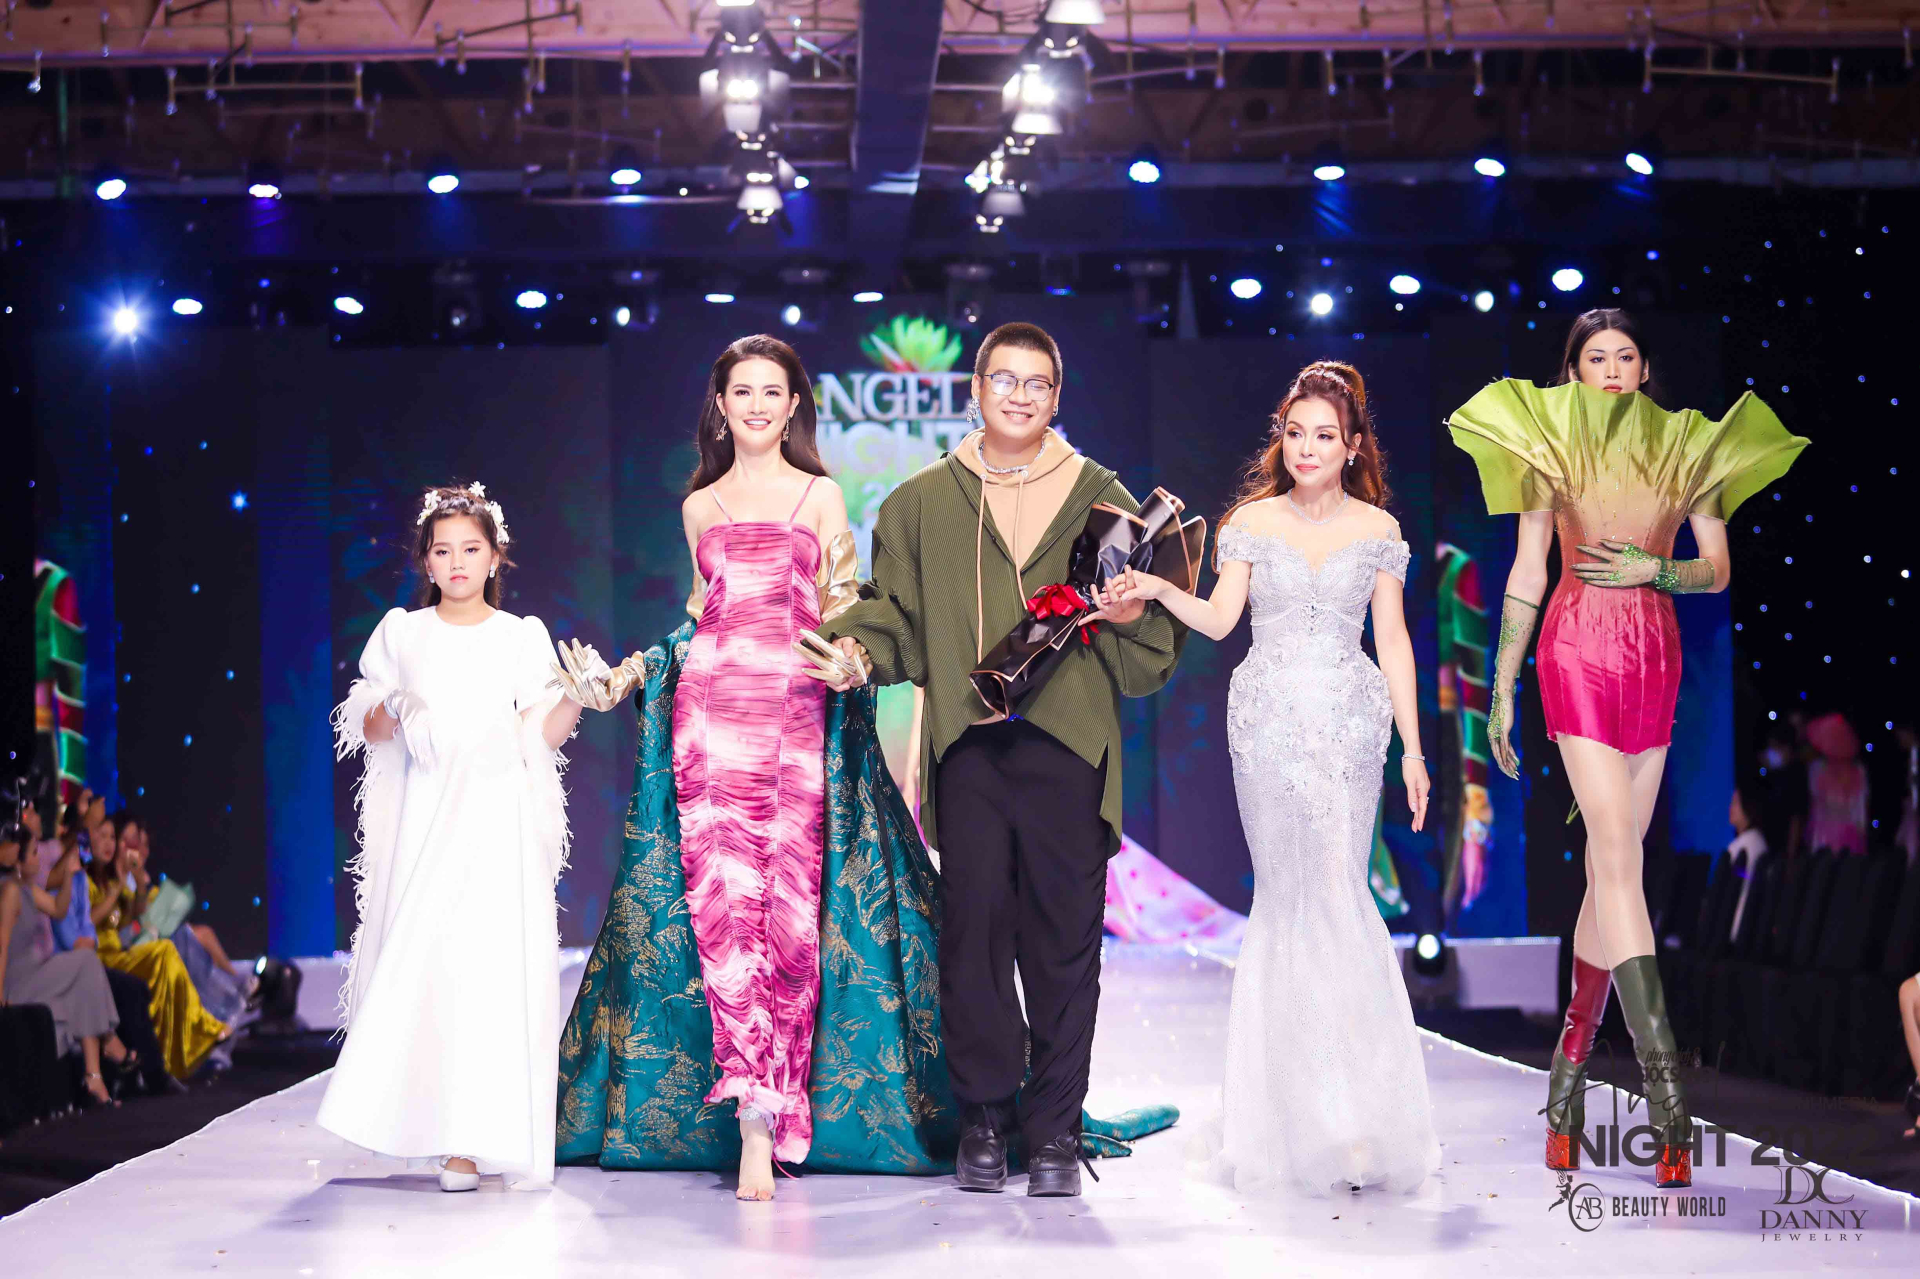 Lần thực hiện cộng tác cùng NTK Thạch Linh đã giúp Nguyễn Hùng Bảo có cơ hội được kết hợp cùng Hoa hậu Bảo Ngọc cho màn trình diễn ấn tượng vừa qua.